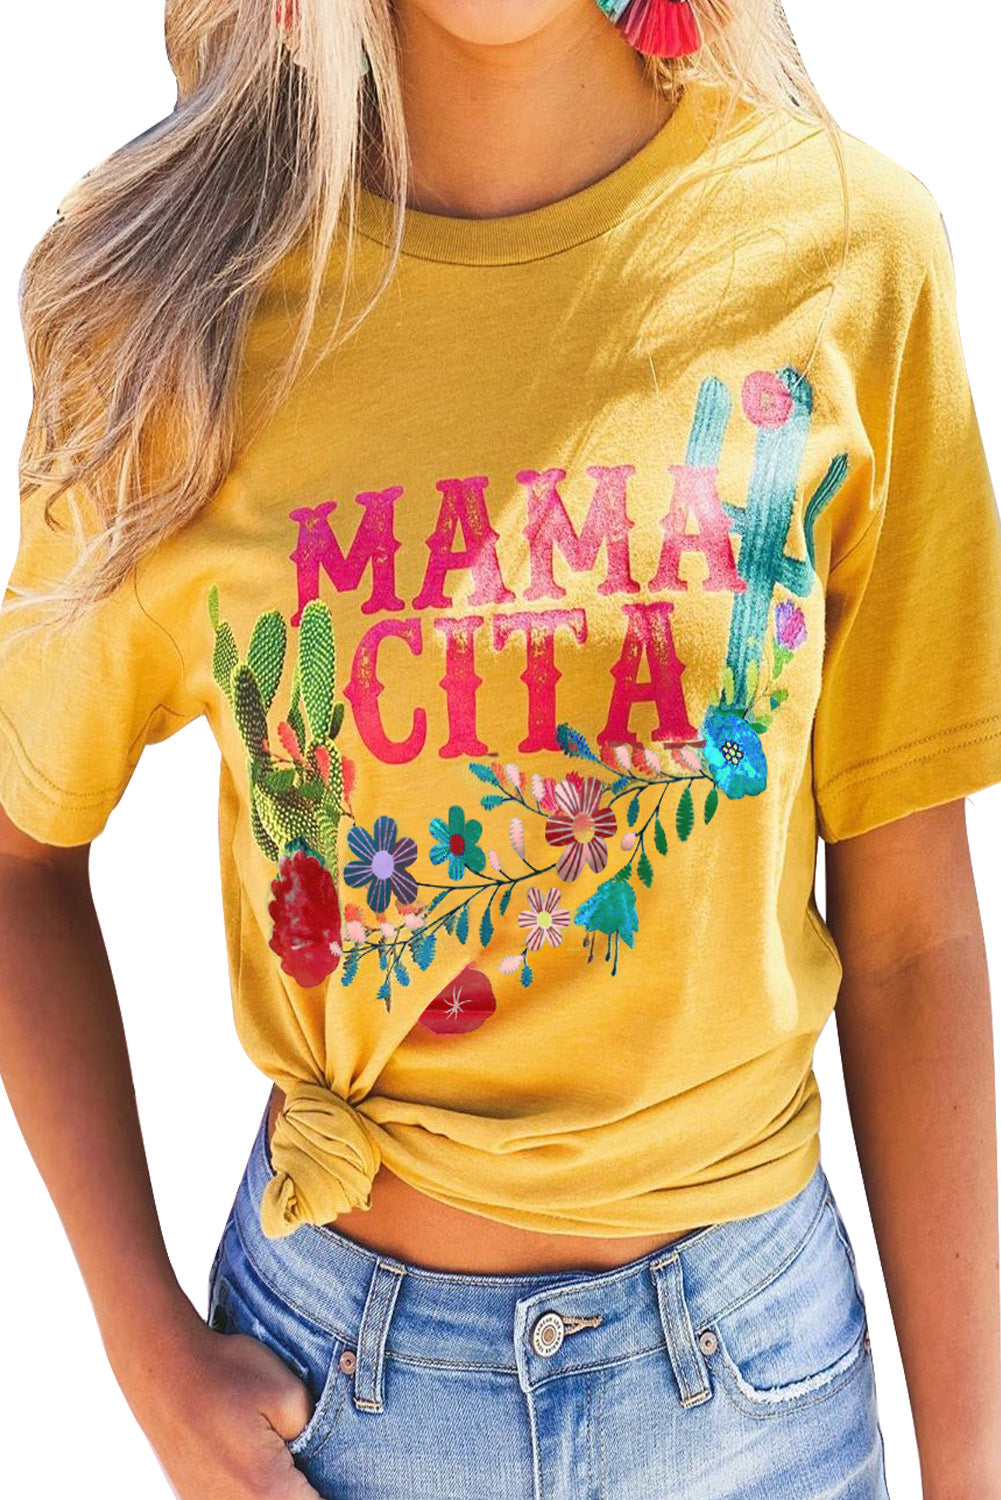 Mamacita avec t-shirt cactus